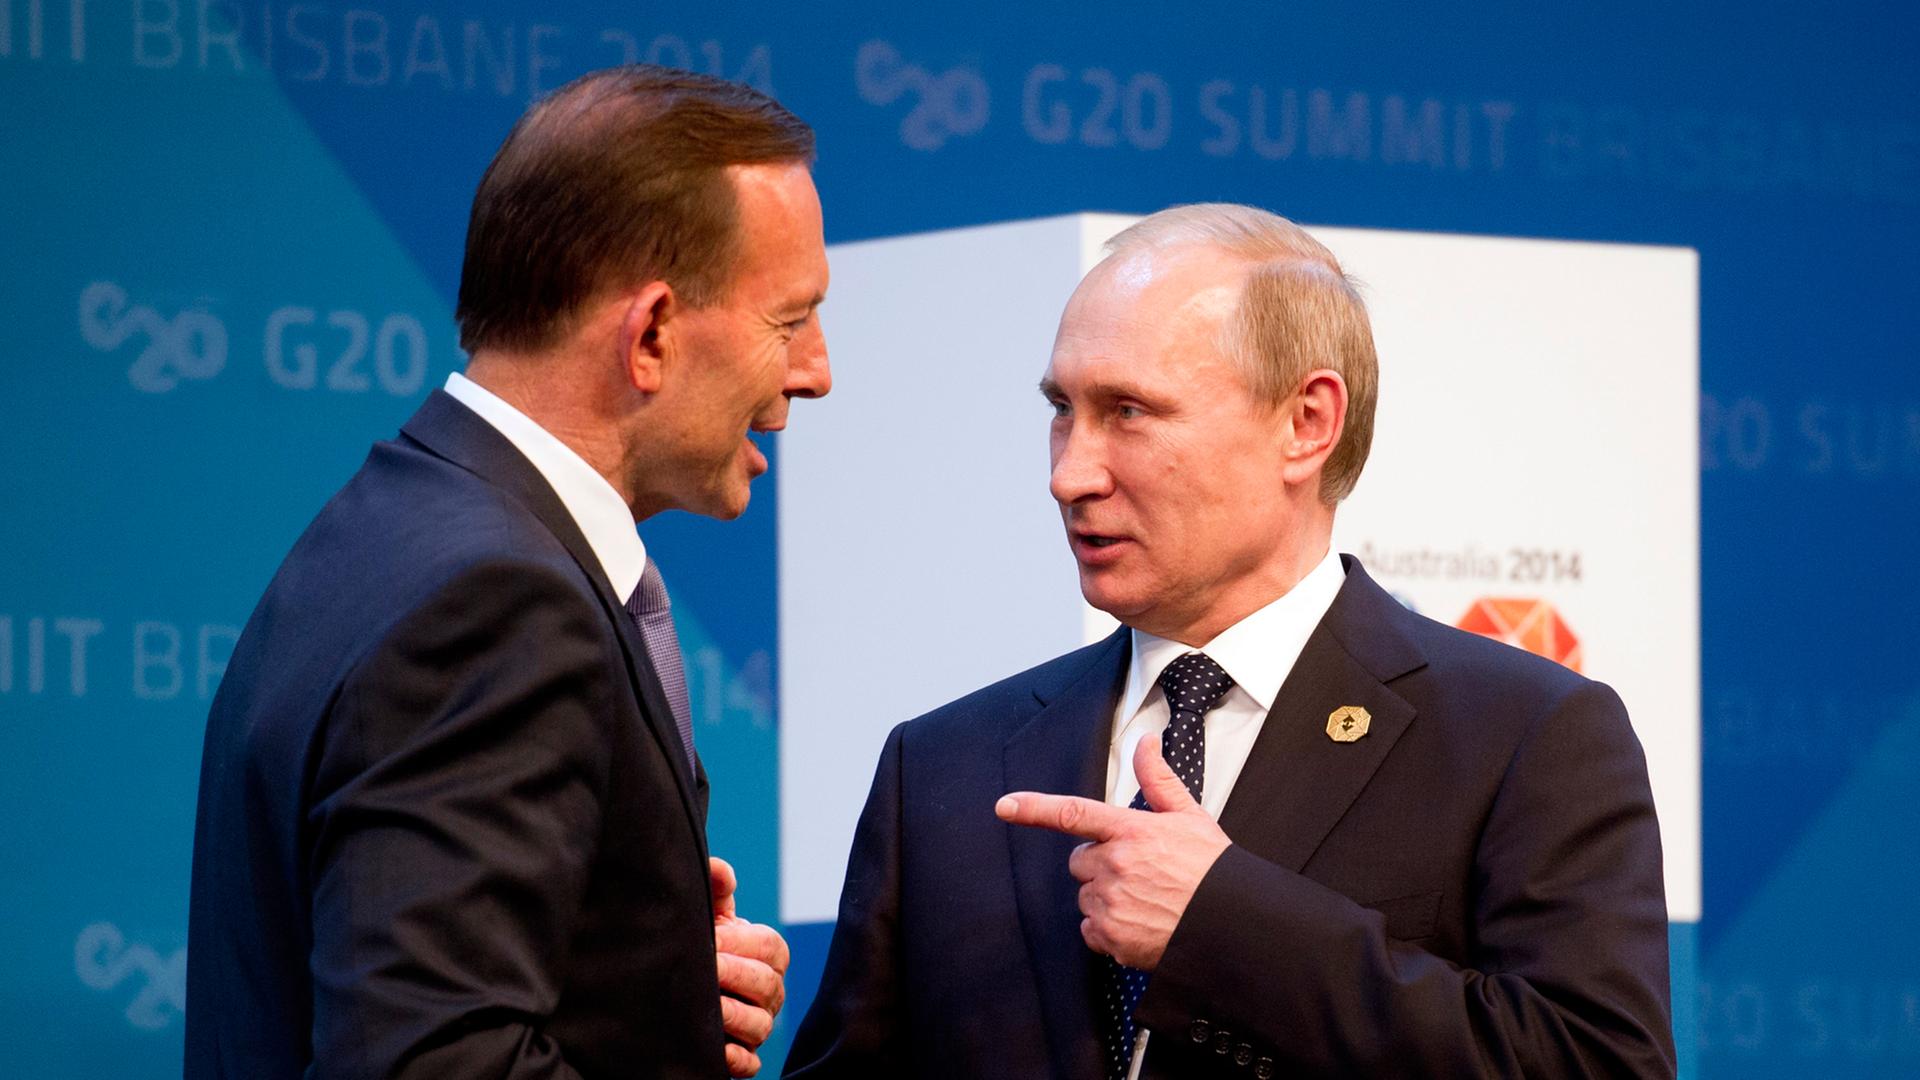 Australiens Premierminister Tony Abbott (links) bei der Begrüßung des russischen Präsidenten Wladimir Putin auf dem G20-Gipfel in Brisbane am 15. November 2014.